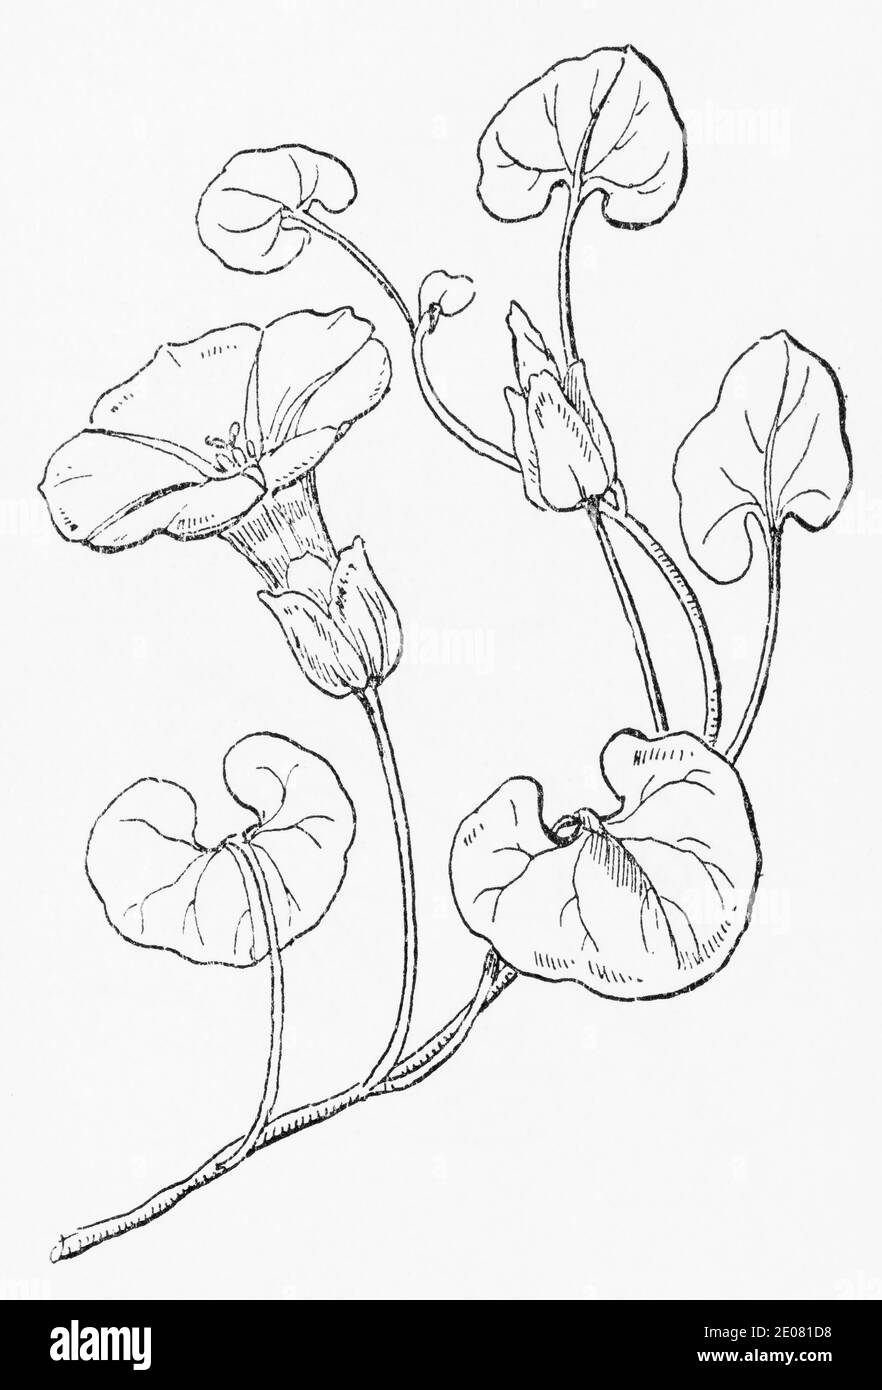 Alte botanische Illustration Gravur von Sea Bindweed / Calystegia soldanella. Traditionelle Heilkräuter Pflanze. Siehe Hinweise Stockfoto